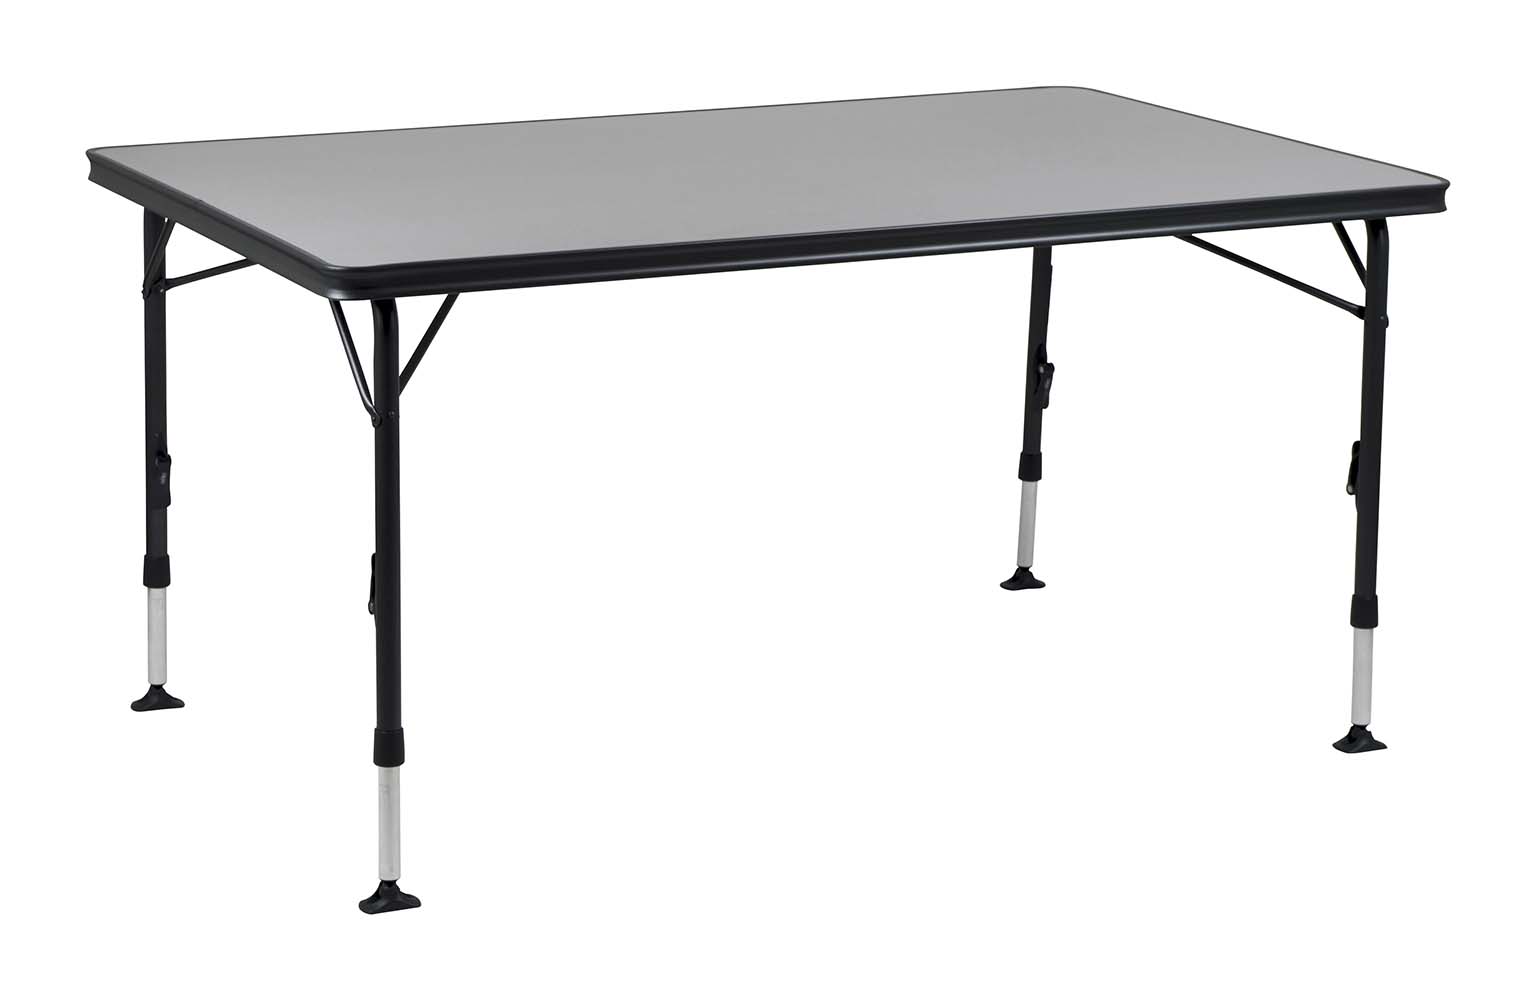 1151420 Ein sehr stabiler und großer Tisch. Durch seine einzigartige Konstruktion ist dieser Tisch einfach auf- und zuzuklappen. Die Beine sind nach dem Einklappen sicher in den Aluminiumschienen an der Unterseite der Tischplatte zu befestigen, die wiederum für eine zusätzliche Verstärkung sorgen.  Die Tischplatte ist besonders groß, so dass sie bis zu 6 Personen beherbergen kann. Dank hochwertiger Materialien und der hitzebeständigen und wasserfesten Tischplatte, wird eine lange Lebensdauer gewährleistet. Die Beine sorgen für hohe Stabilität durch die dicken und extra verstärkten Rohre.  Die Stabilisierungsfüße sorgen für zusätzlichen Halt auf jeder Oberfläche. Dieser Tisch ist durch den Alu-Rahmen leichtgewichtig und leicht zu transportieren.